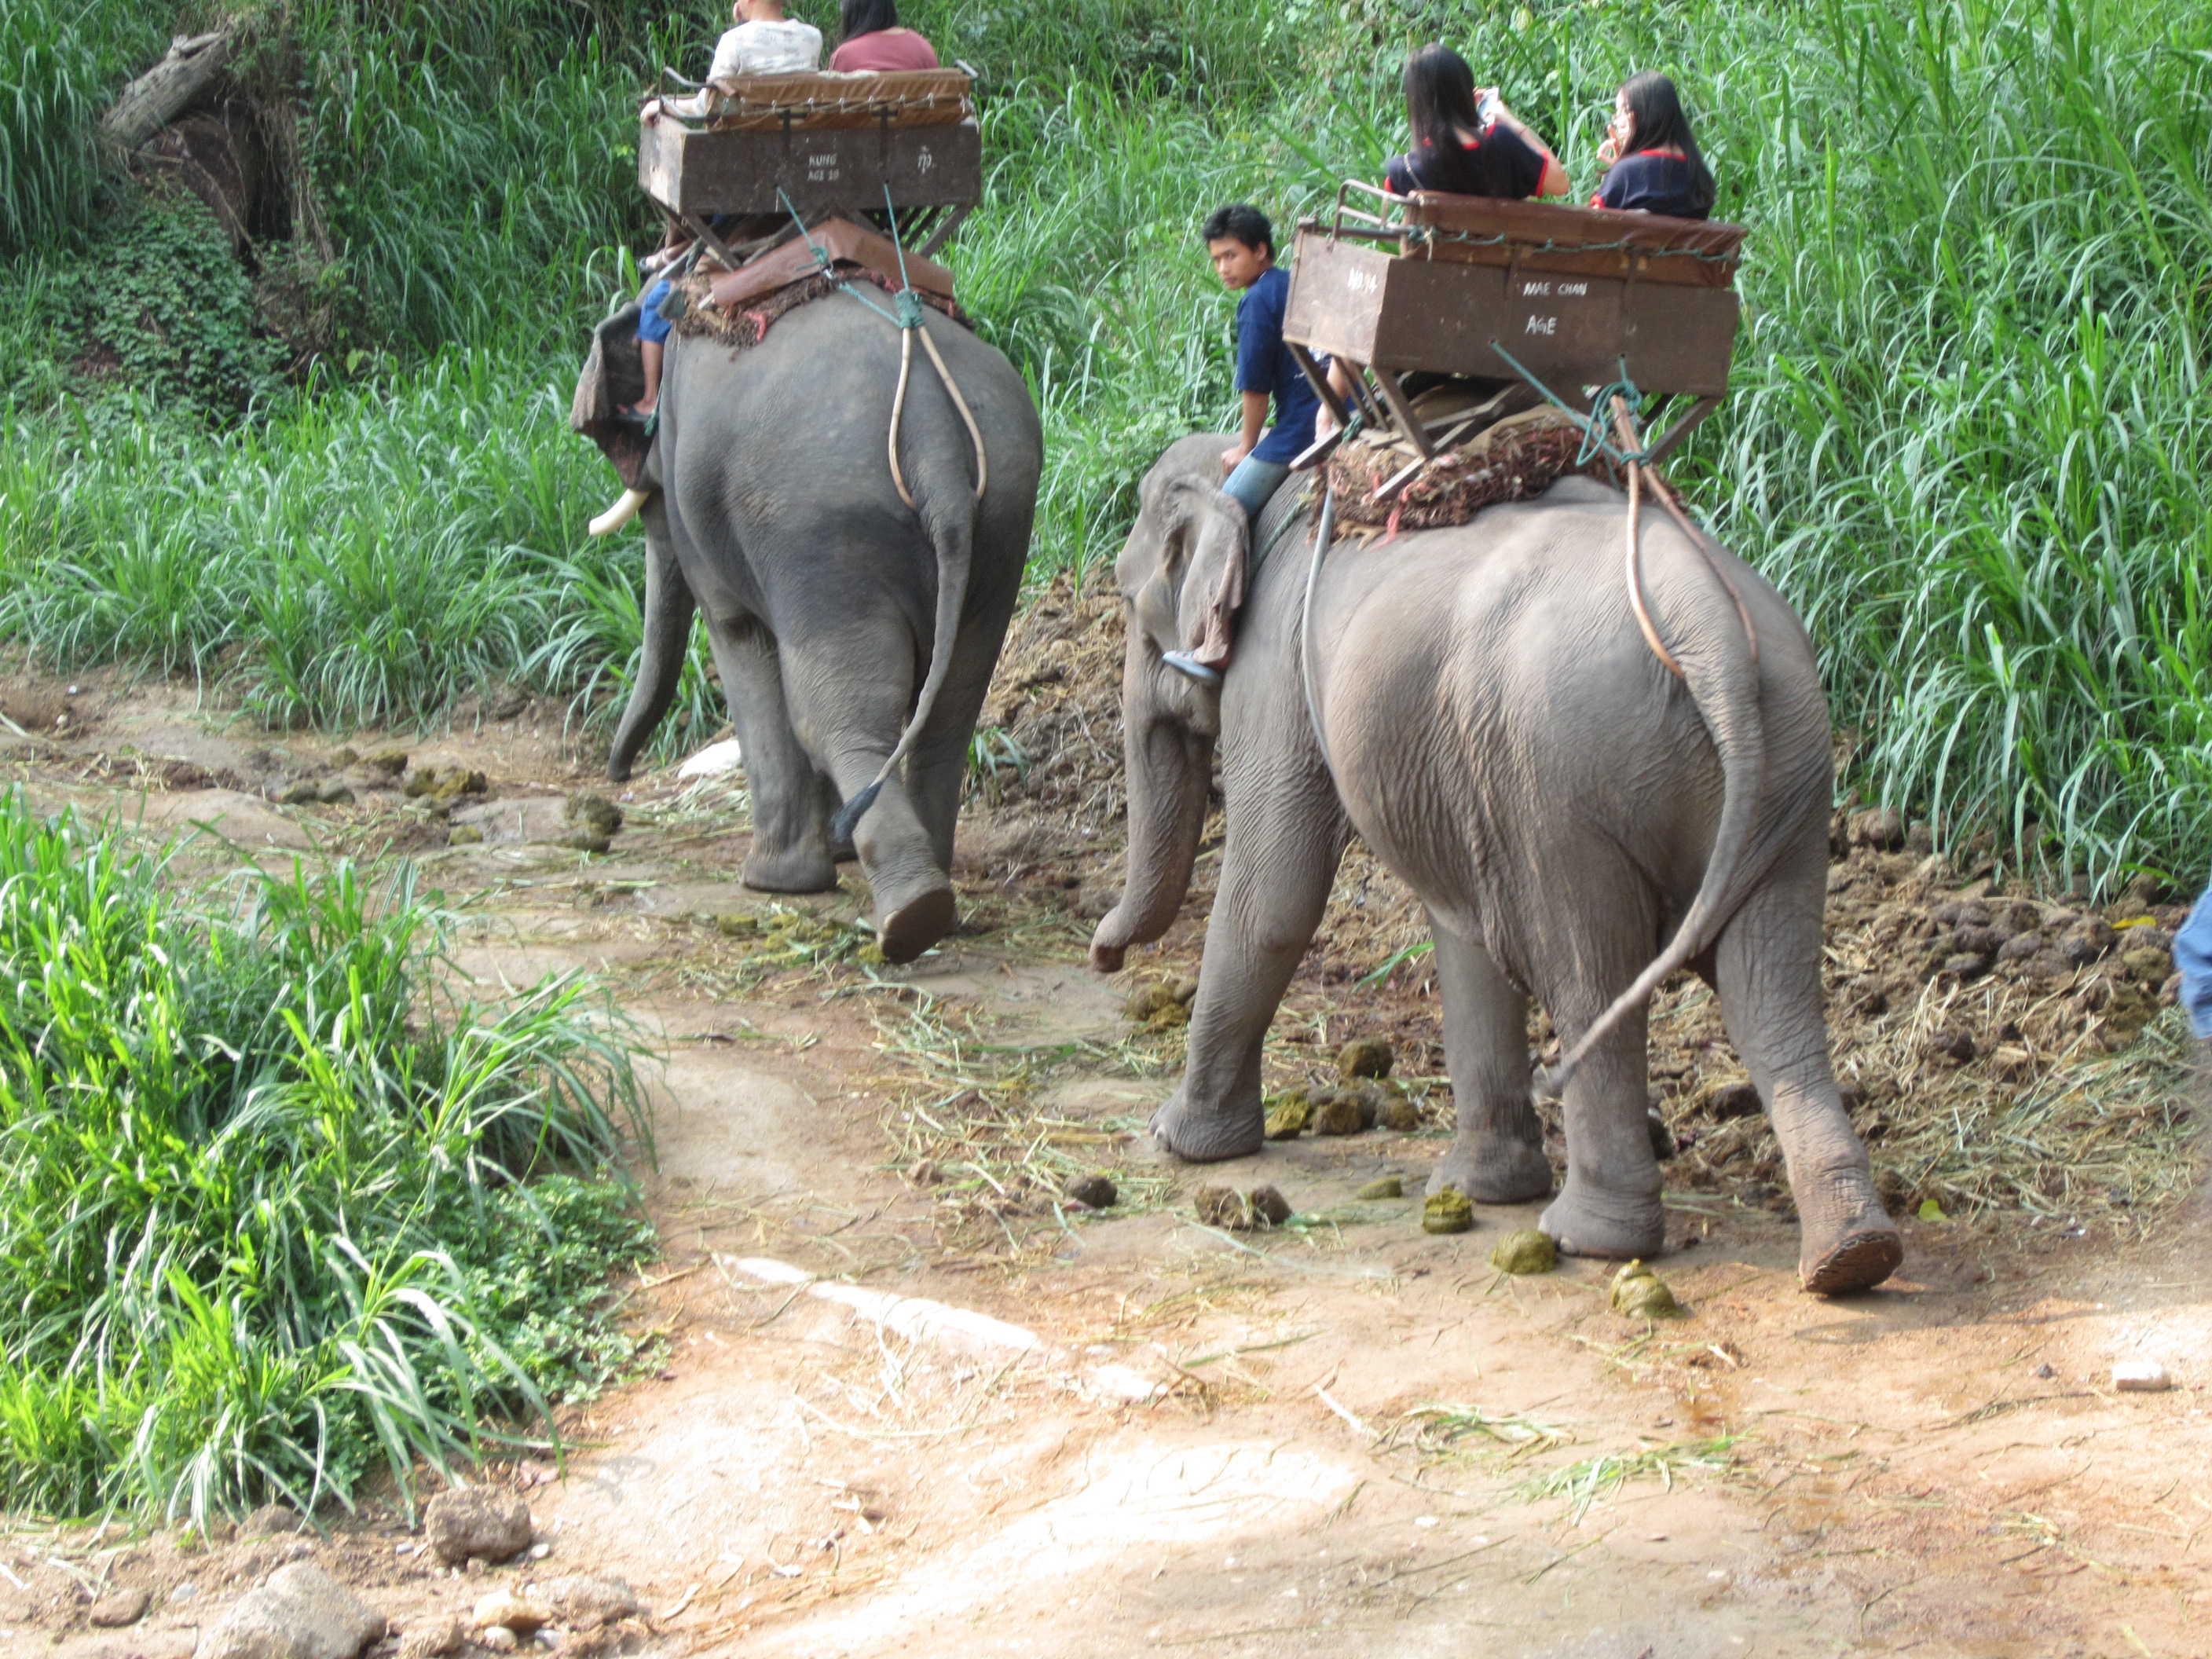 【携程攻略】湄拉玛美莎大象营景点,去清迈最值得去的地方之一，特意选的全天的行程，孩子玩的非常开心。…